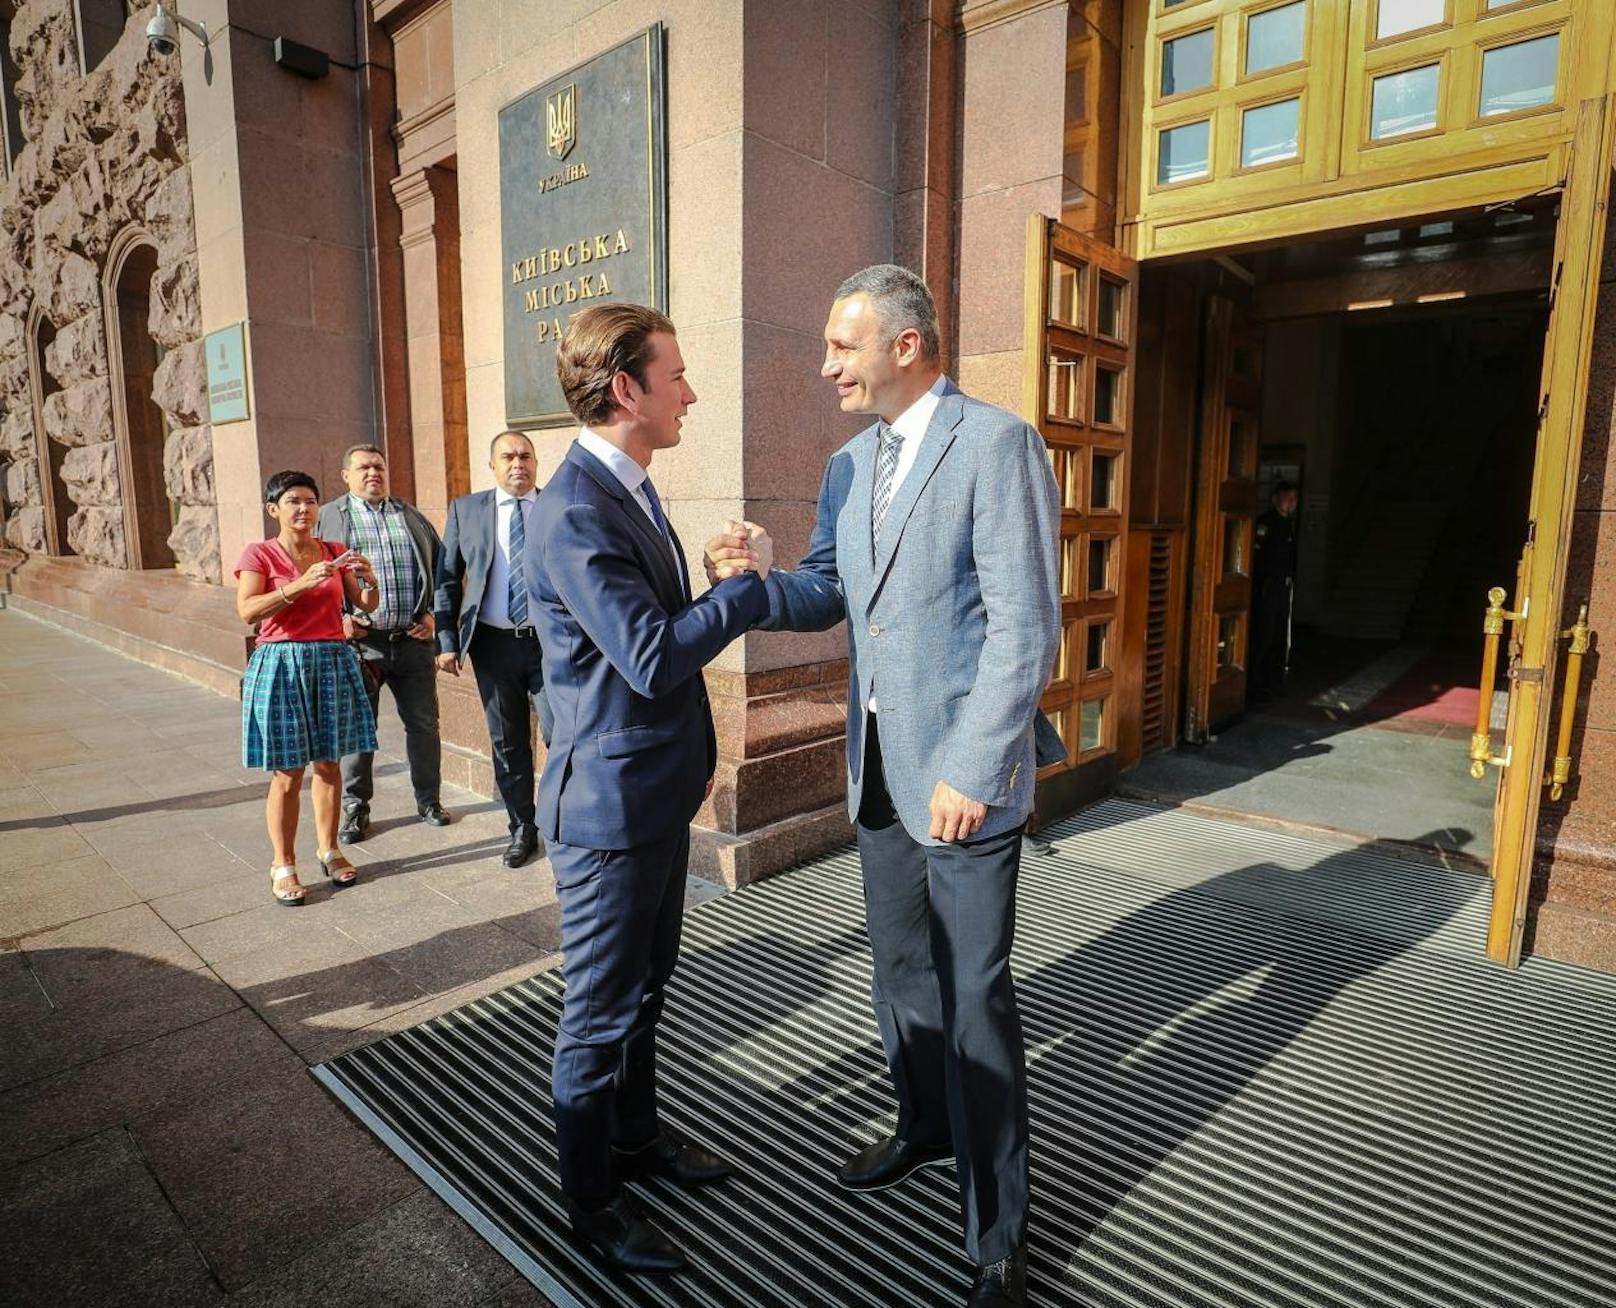 Bürgermeister Vitali Klitschko (r.) begrüßt Kurz vor dem Rathaus von Kiew.